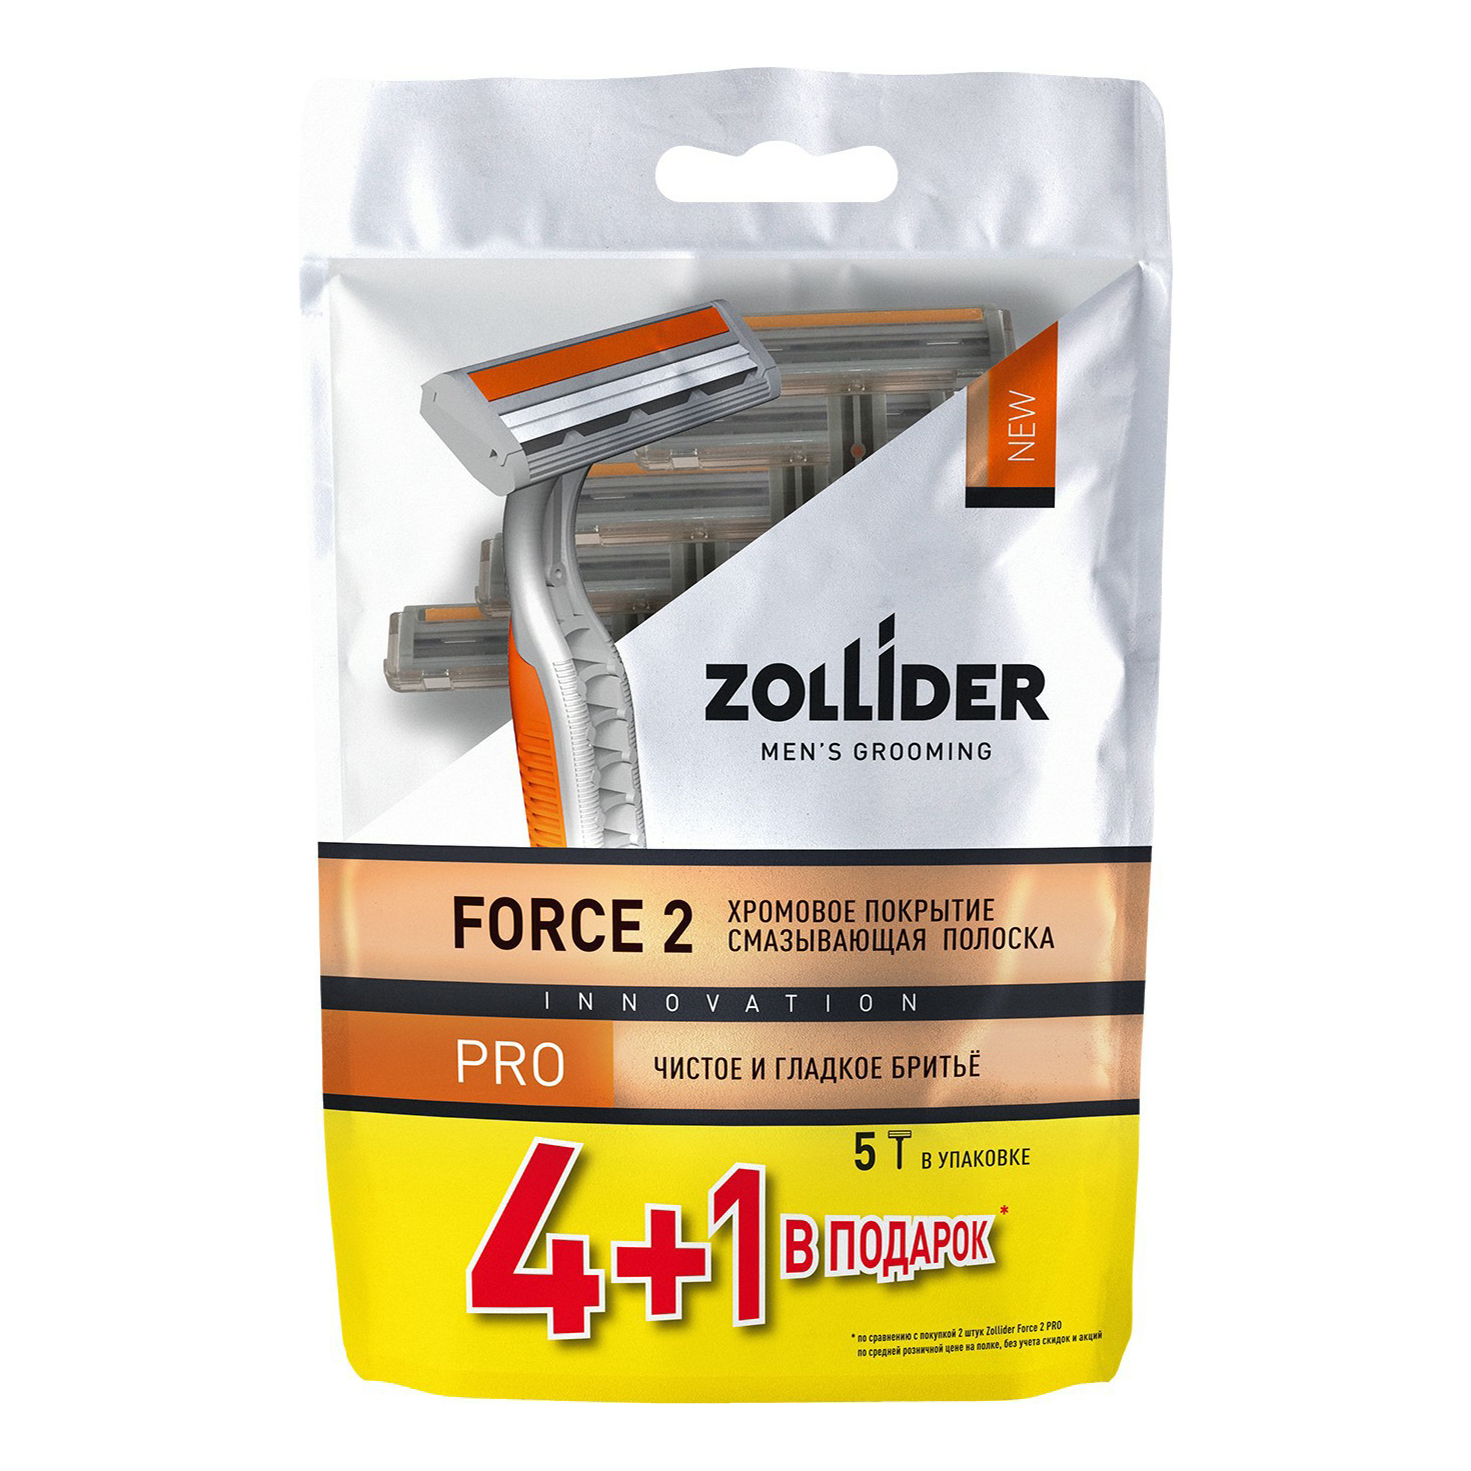 Бритвенные станки мужские Zollider Force 2 Pro одноразовые с двойными лезвиями 4 + 1 шт